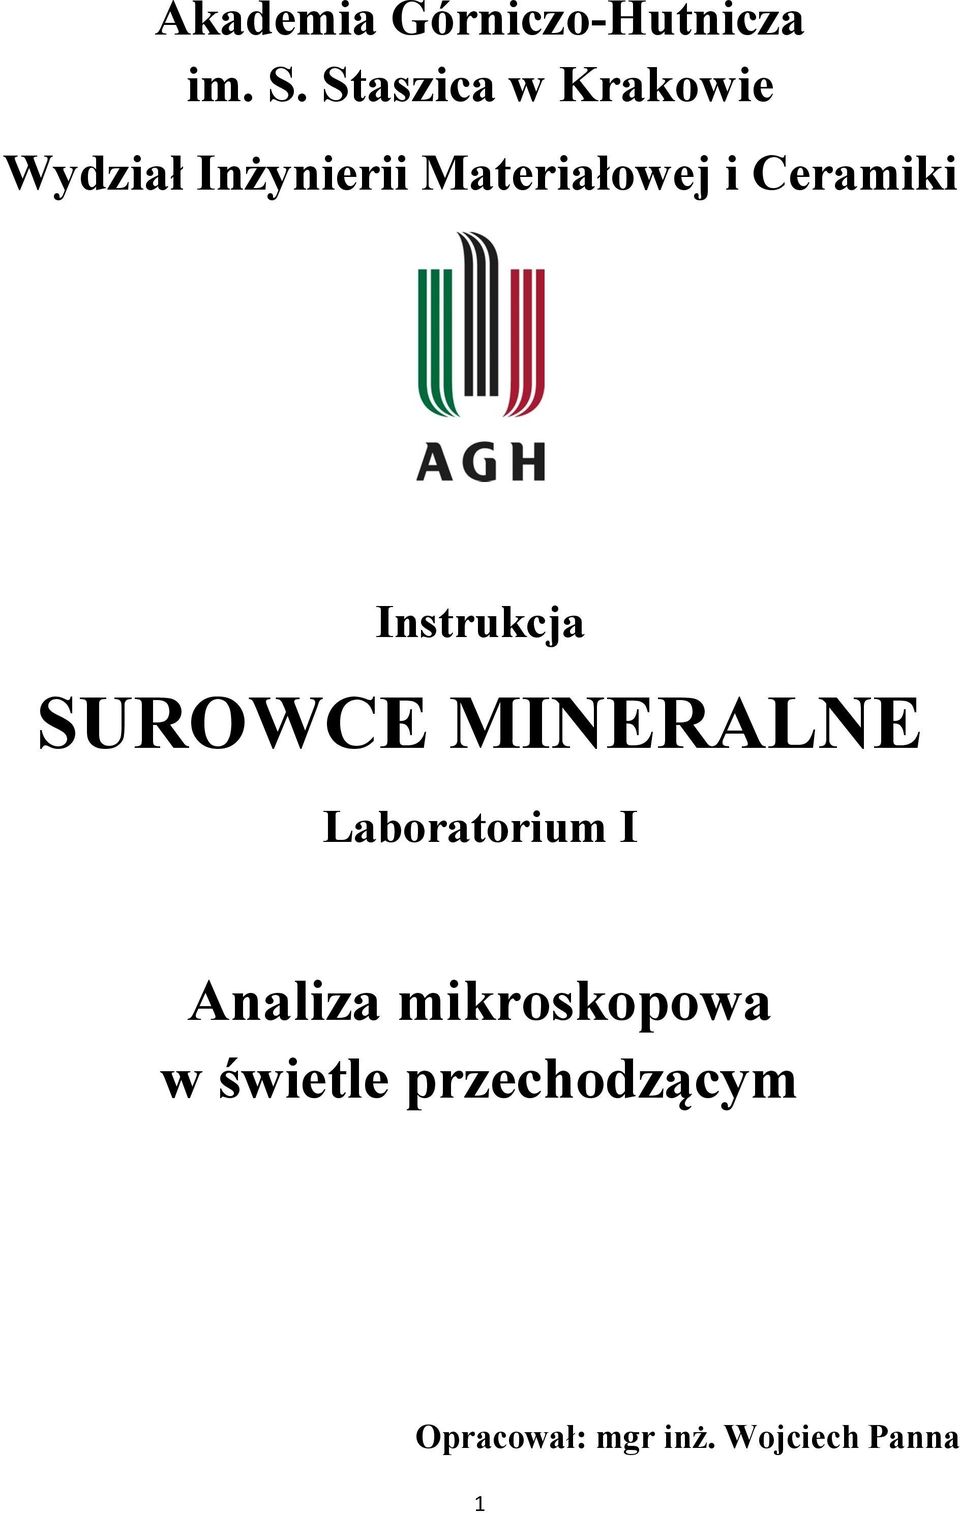 Ceramiki Instrukcja SUROWCE MINERALNE Laboratorium I